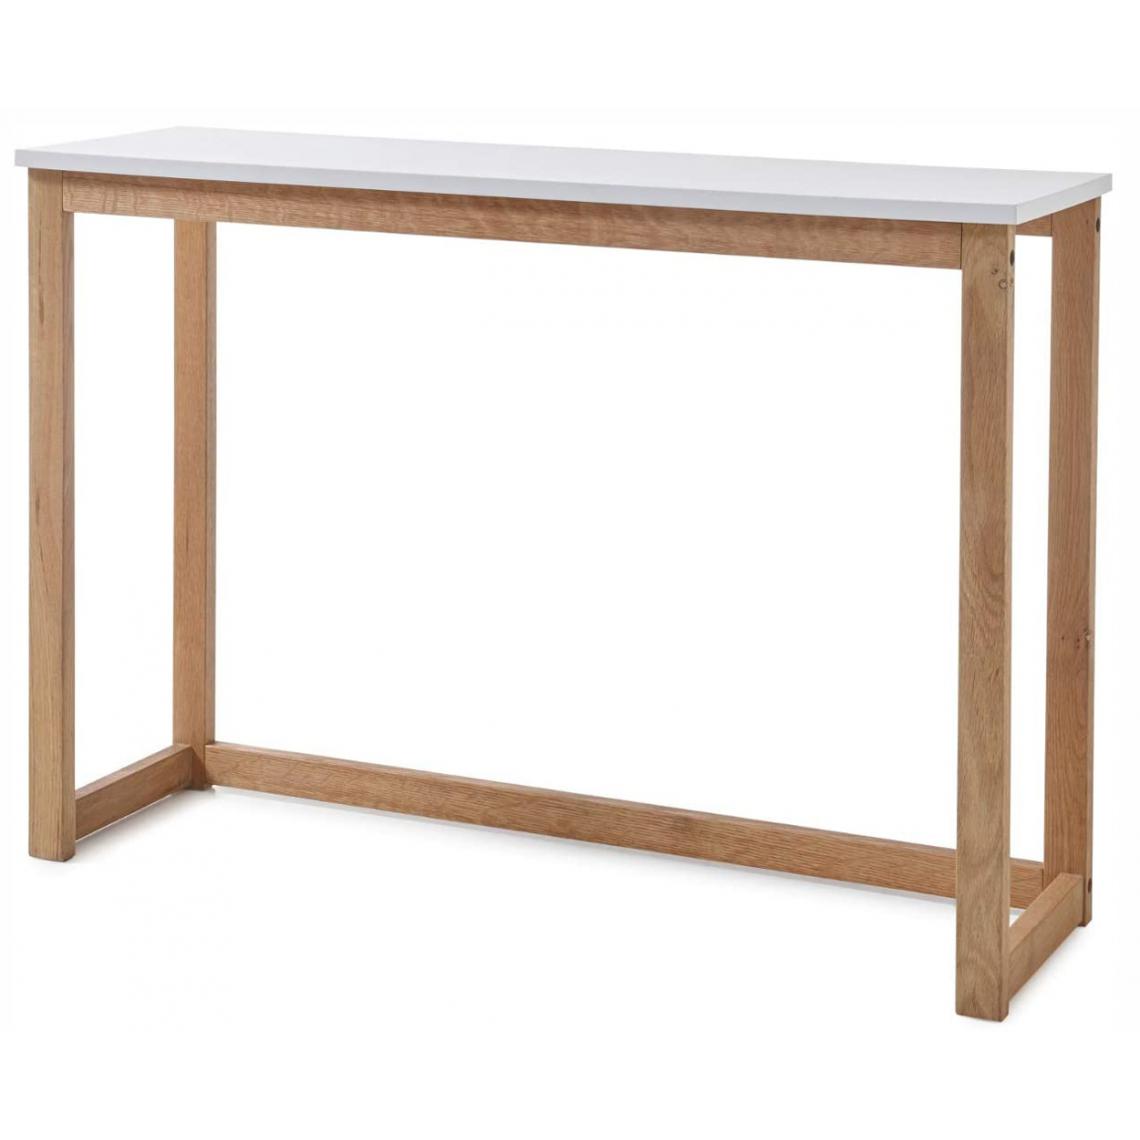 Pegane - Table console coloris blanc mat et chêne - Longueur 110 x Hauteur 75 x Profondeur 32 cm - Consoles